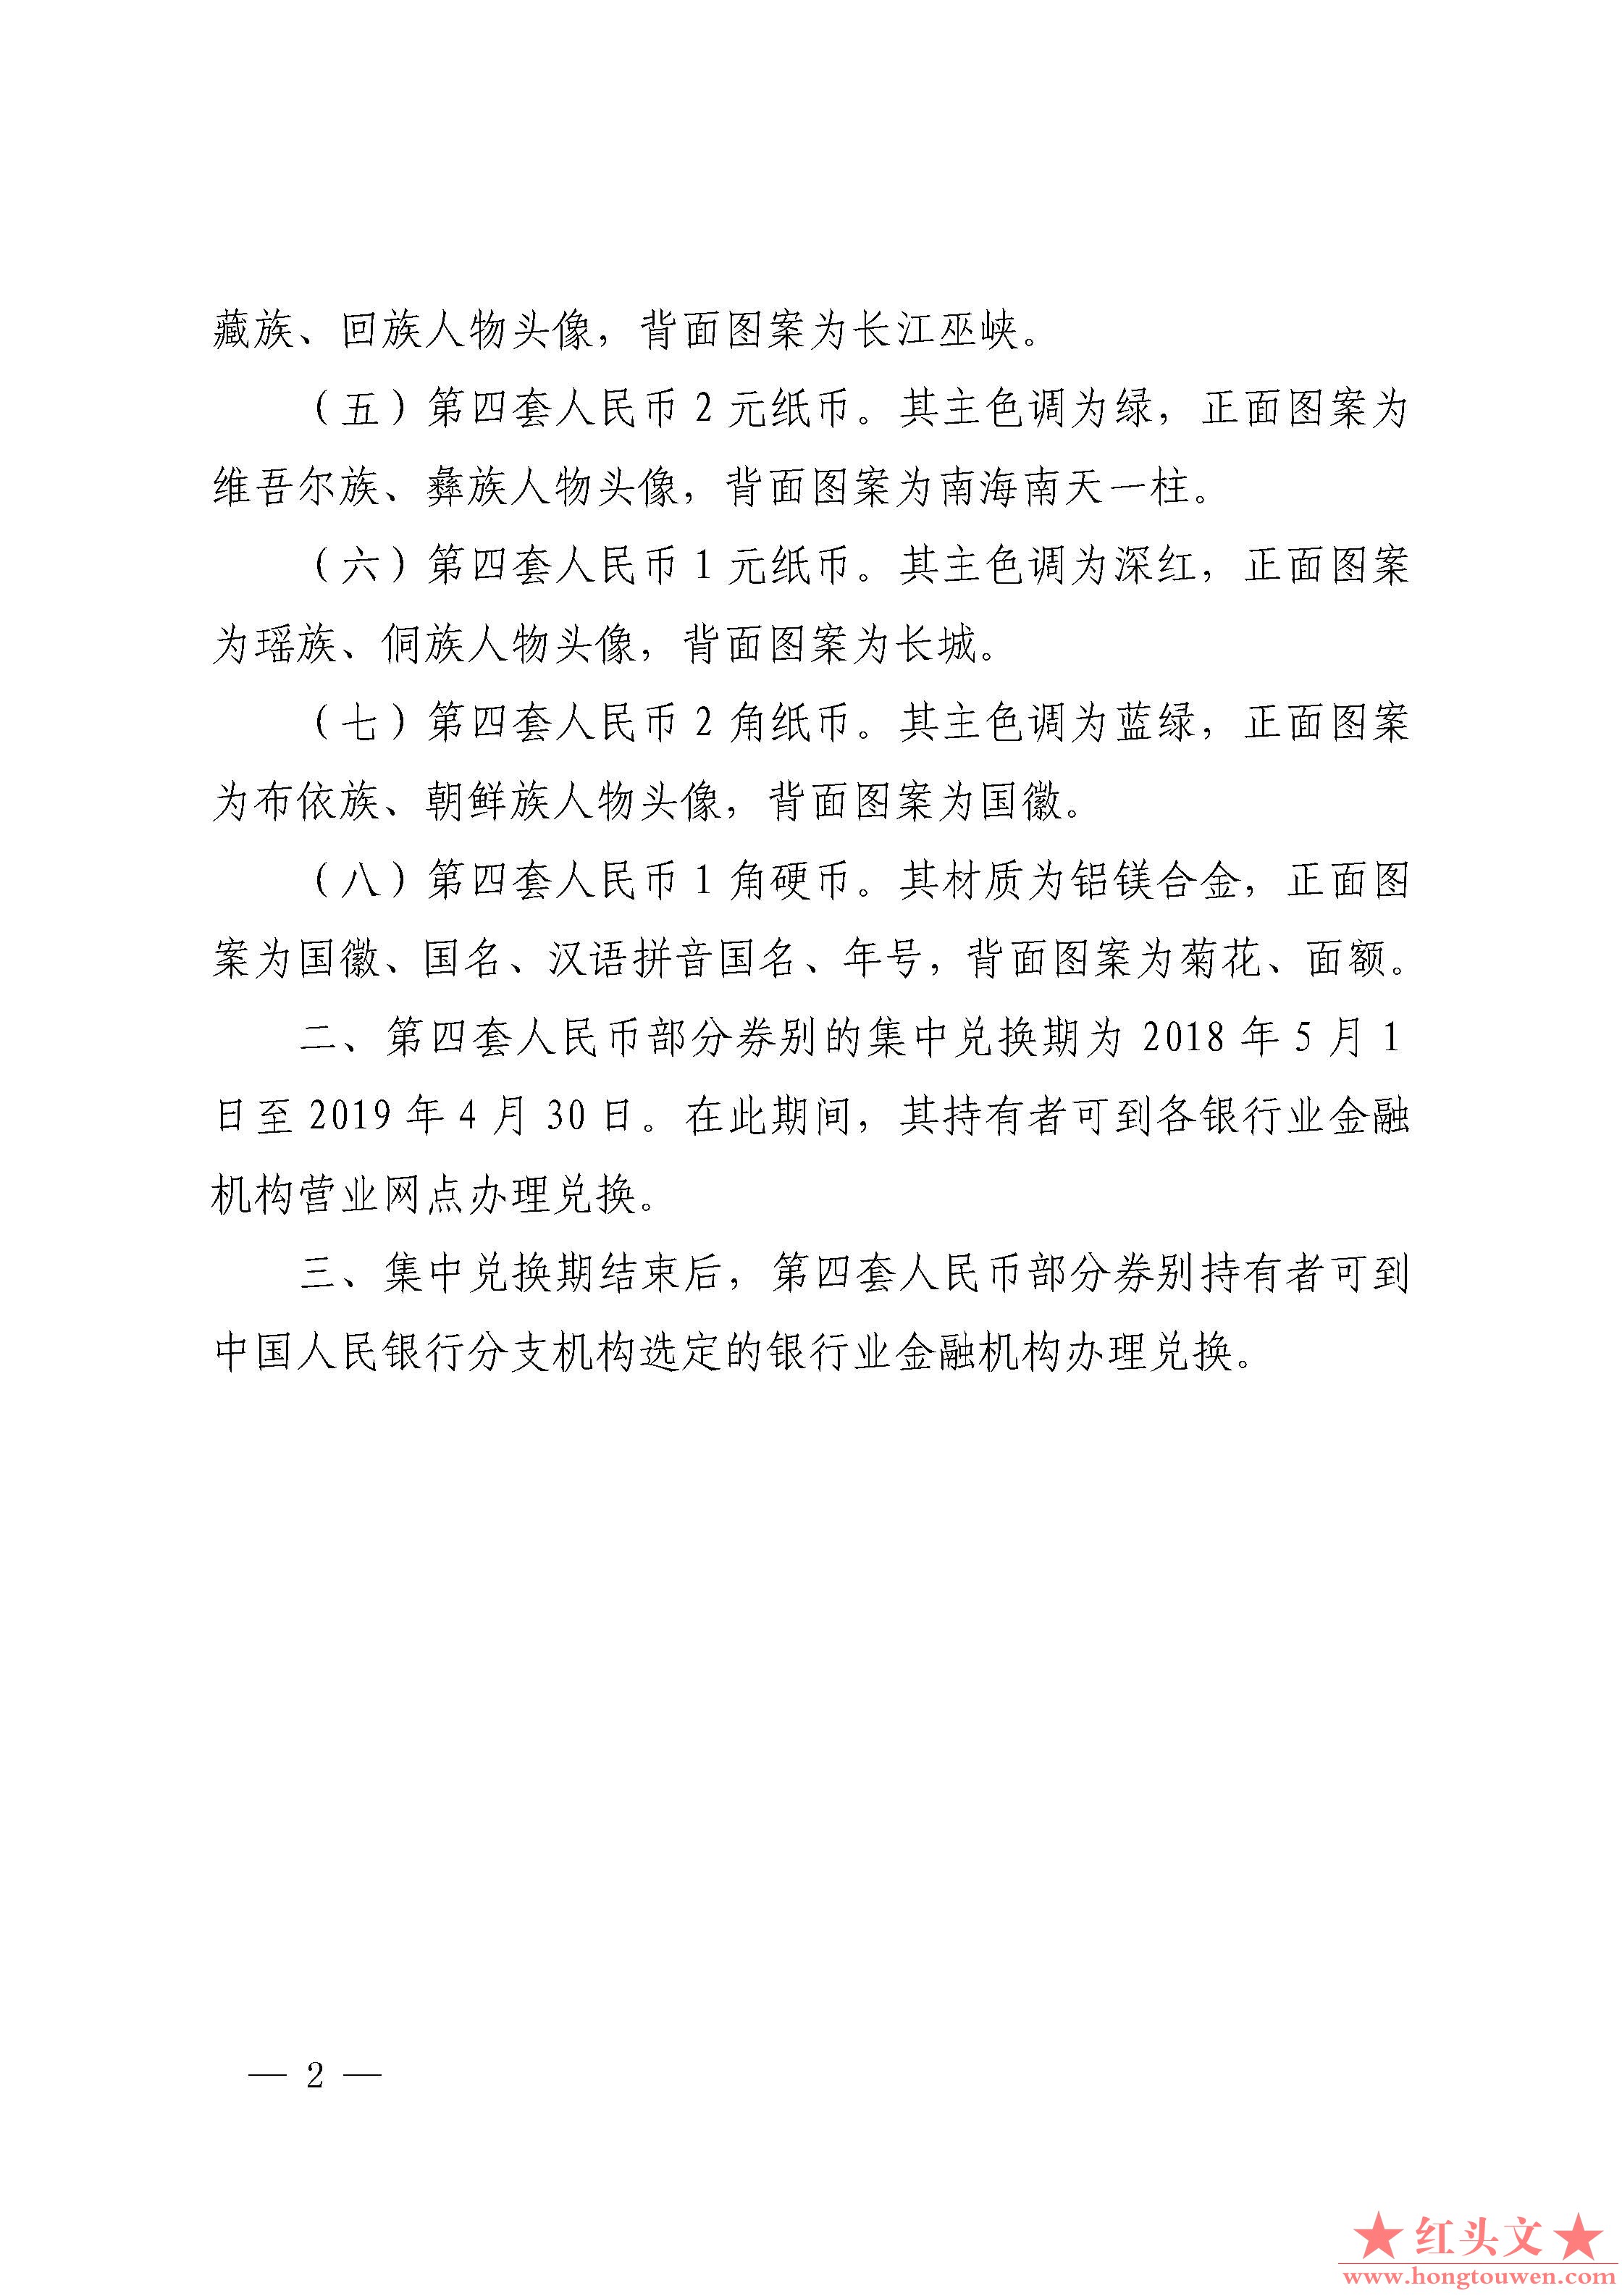 中国人民银行公告[2018]第6号-停止部分第四套人民币券别流通_页面_02.jpg.jpg